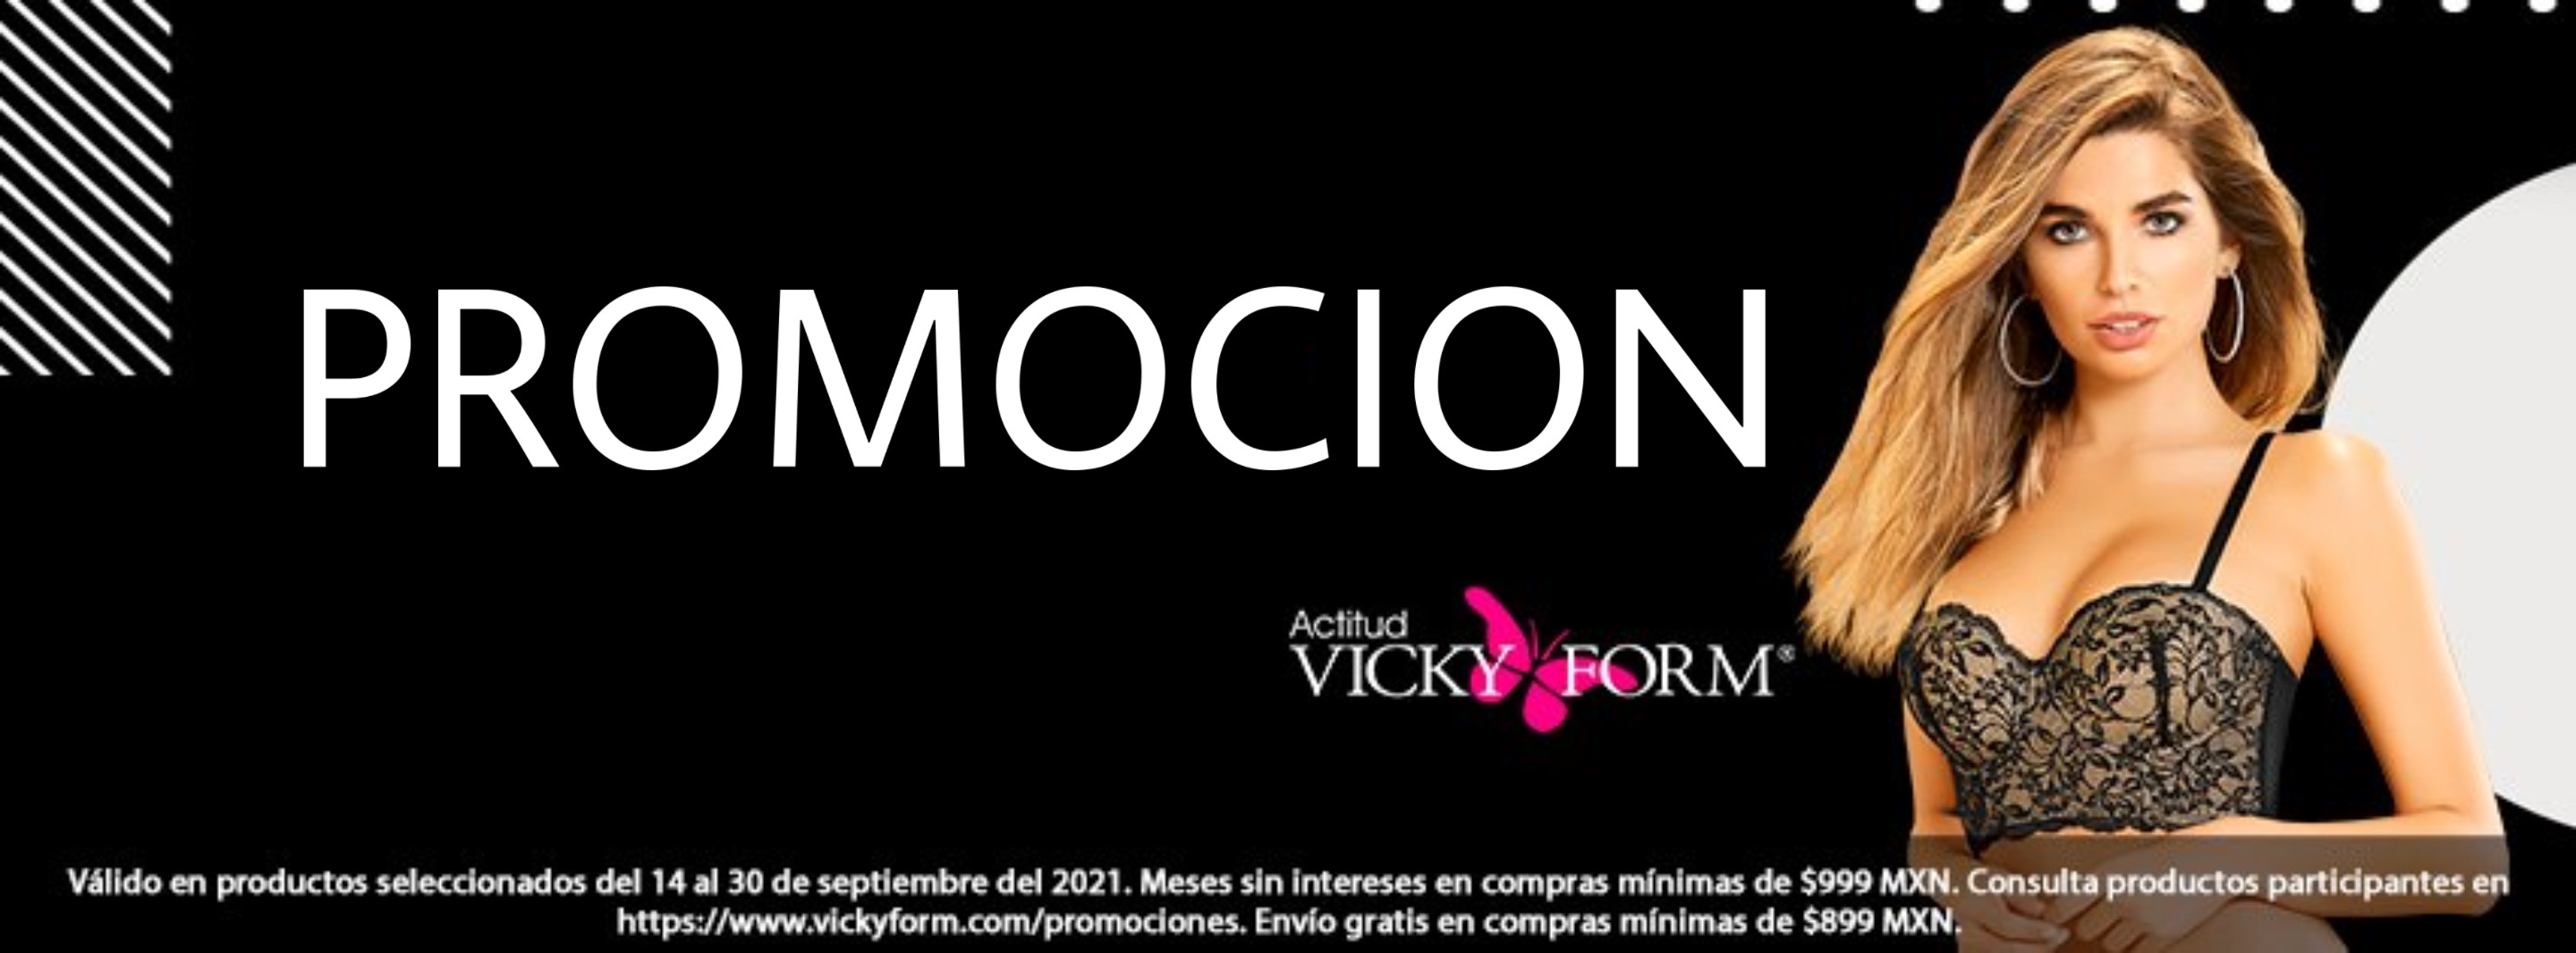 Vicky Form Promoción Octubre 2021